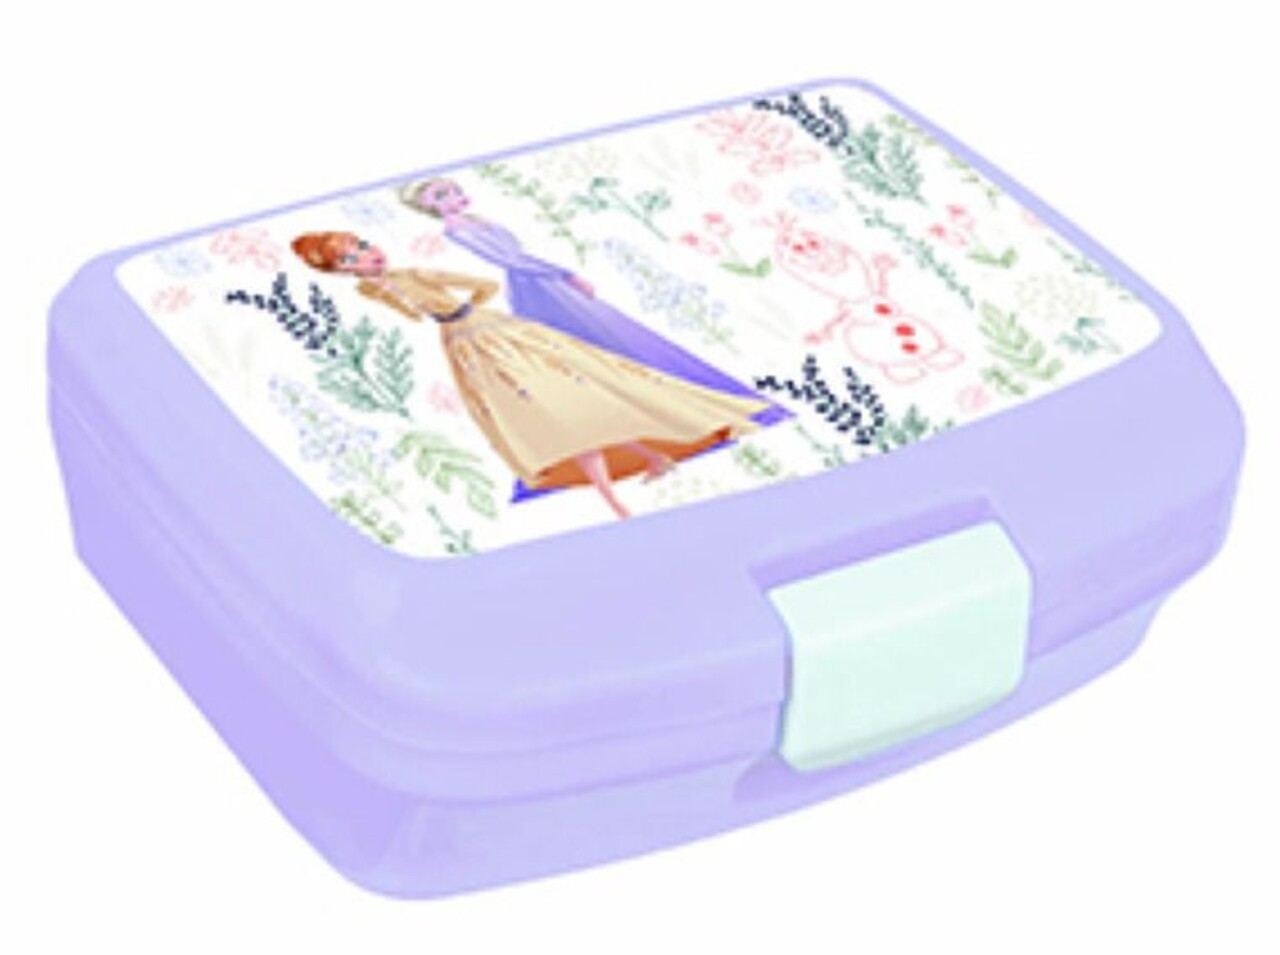 Herbal Frozen II Szendvics doboz, Disney, 17x12.2x6.5 cm, műanyag, fehér